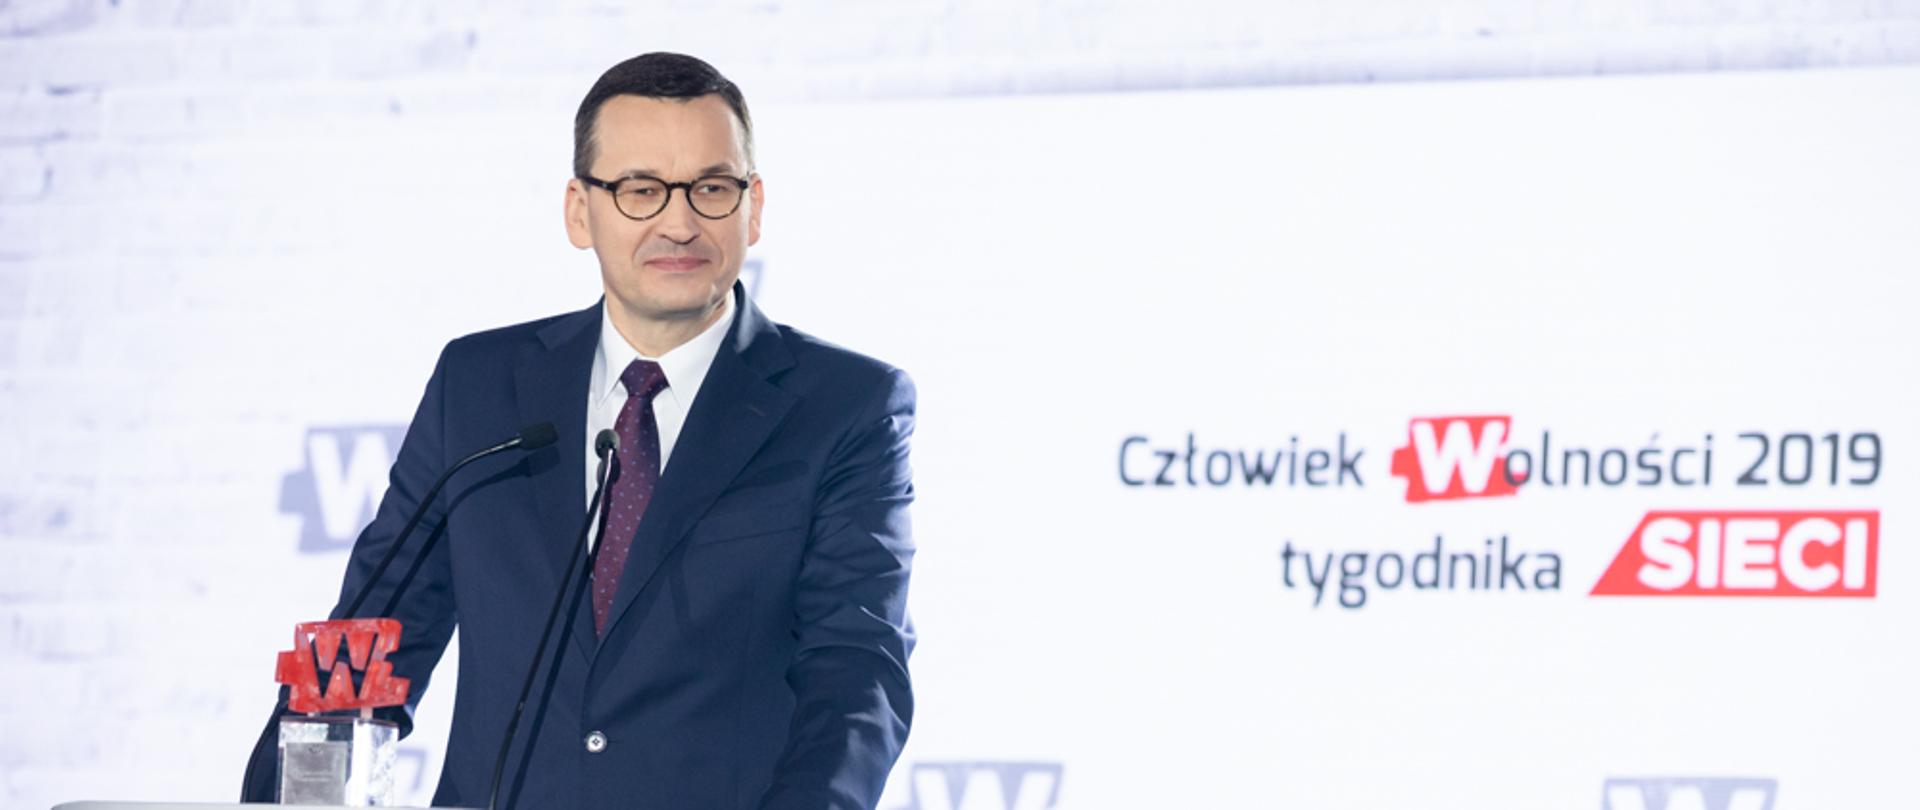 Premier Mateusz Morawiecki z nagrodą Człowiek Wolności 2019 roku Tygodnika Sieci.